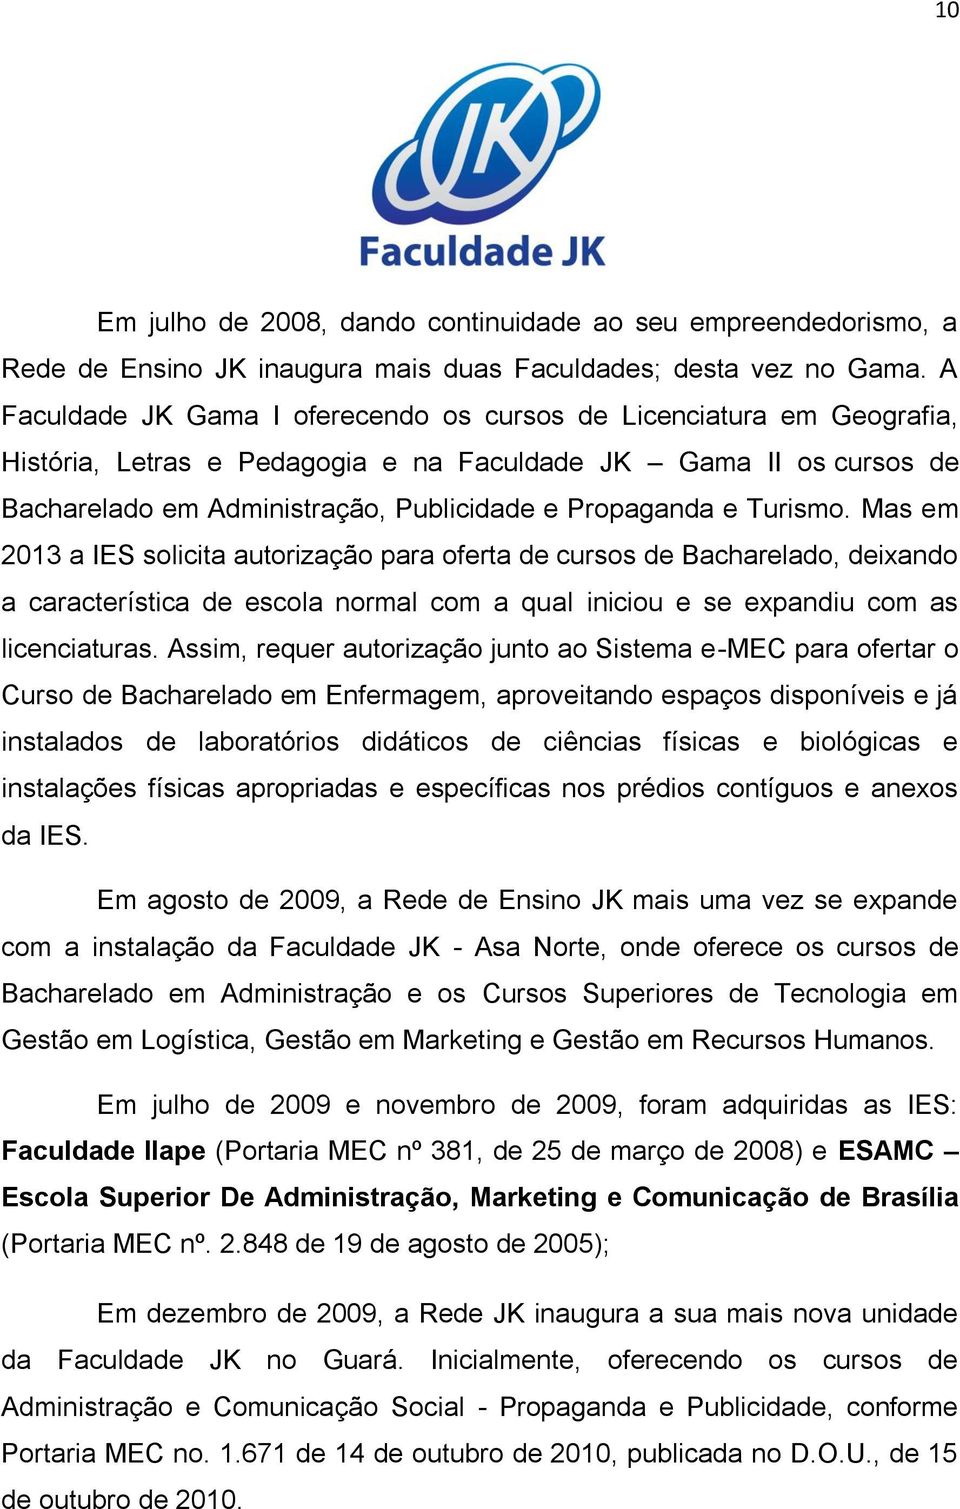 Turismo. Mas em 2013 a IES solicita autorização para oferta de cursos de Bacharelado, deixando a característica de escola normal com a qual iniciou e se expandiu com as licenciaturas.